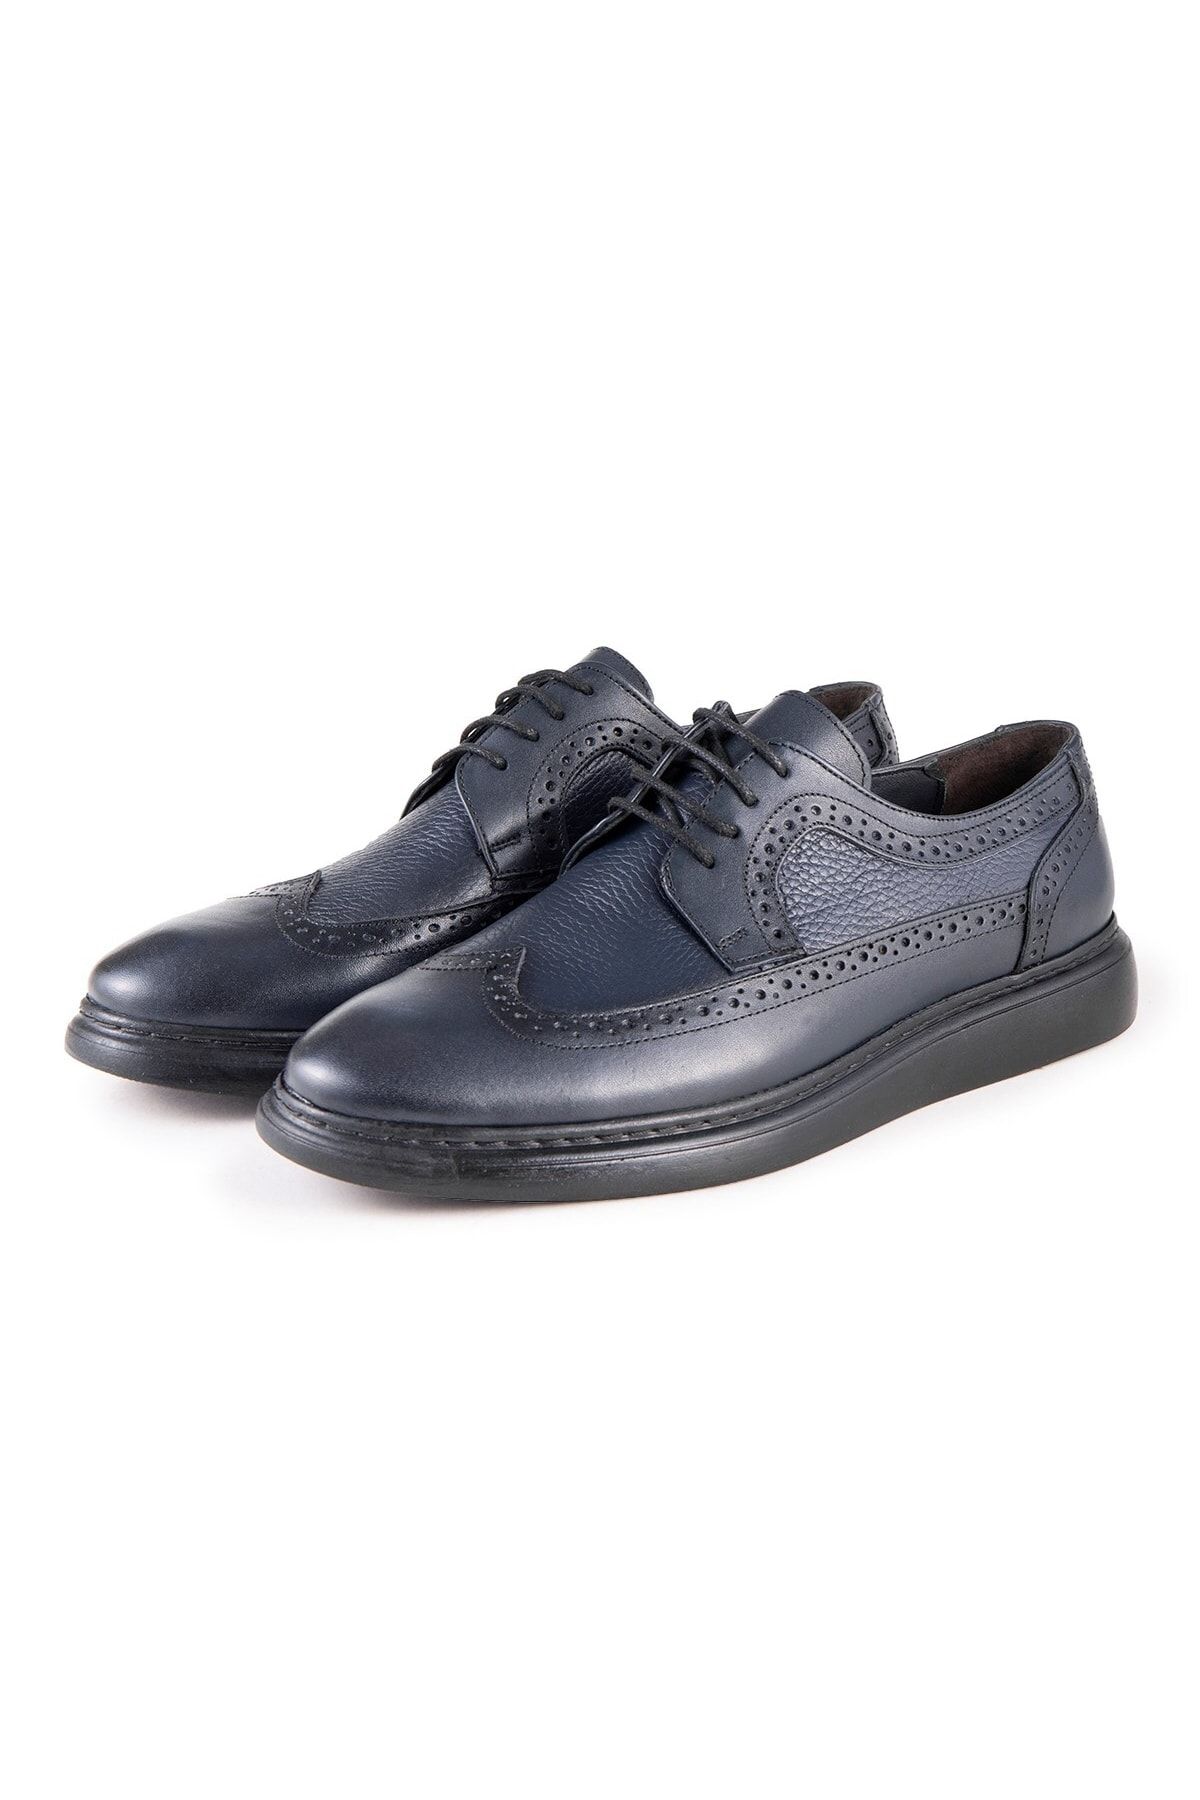 Ducavelli Lusso Hakiki Deri Erkek Günlük Klasik Ayakkabı, Hakiki Deri Klasik Ayakkabı, Derby Klasik